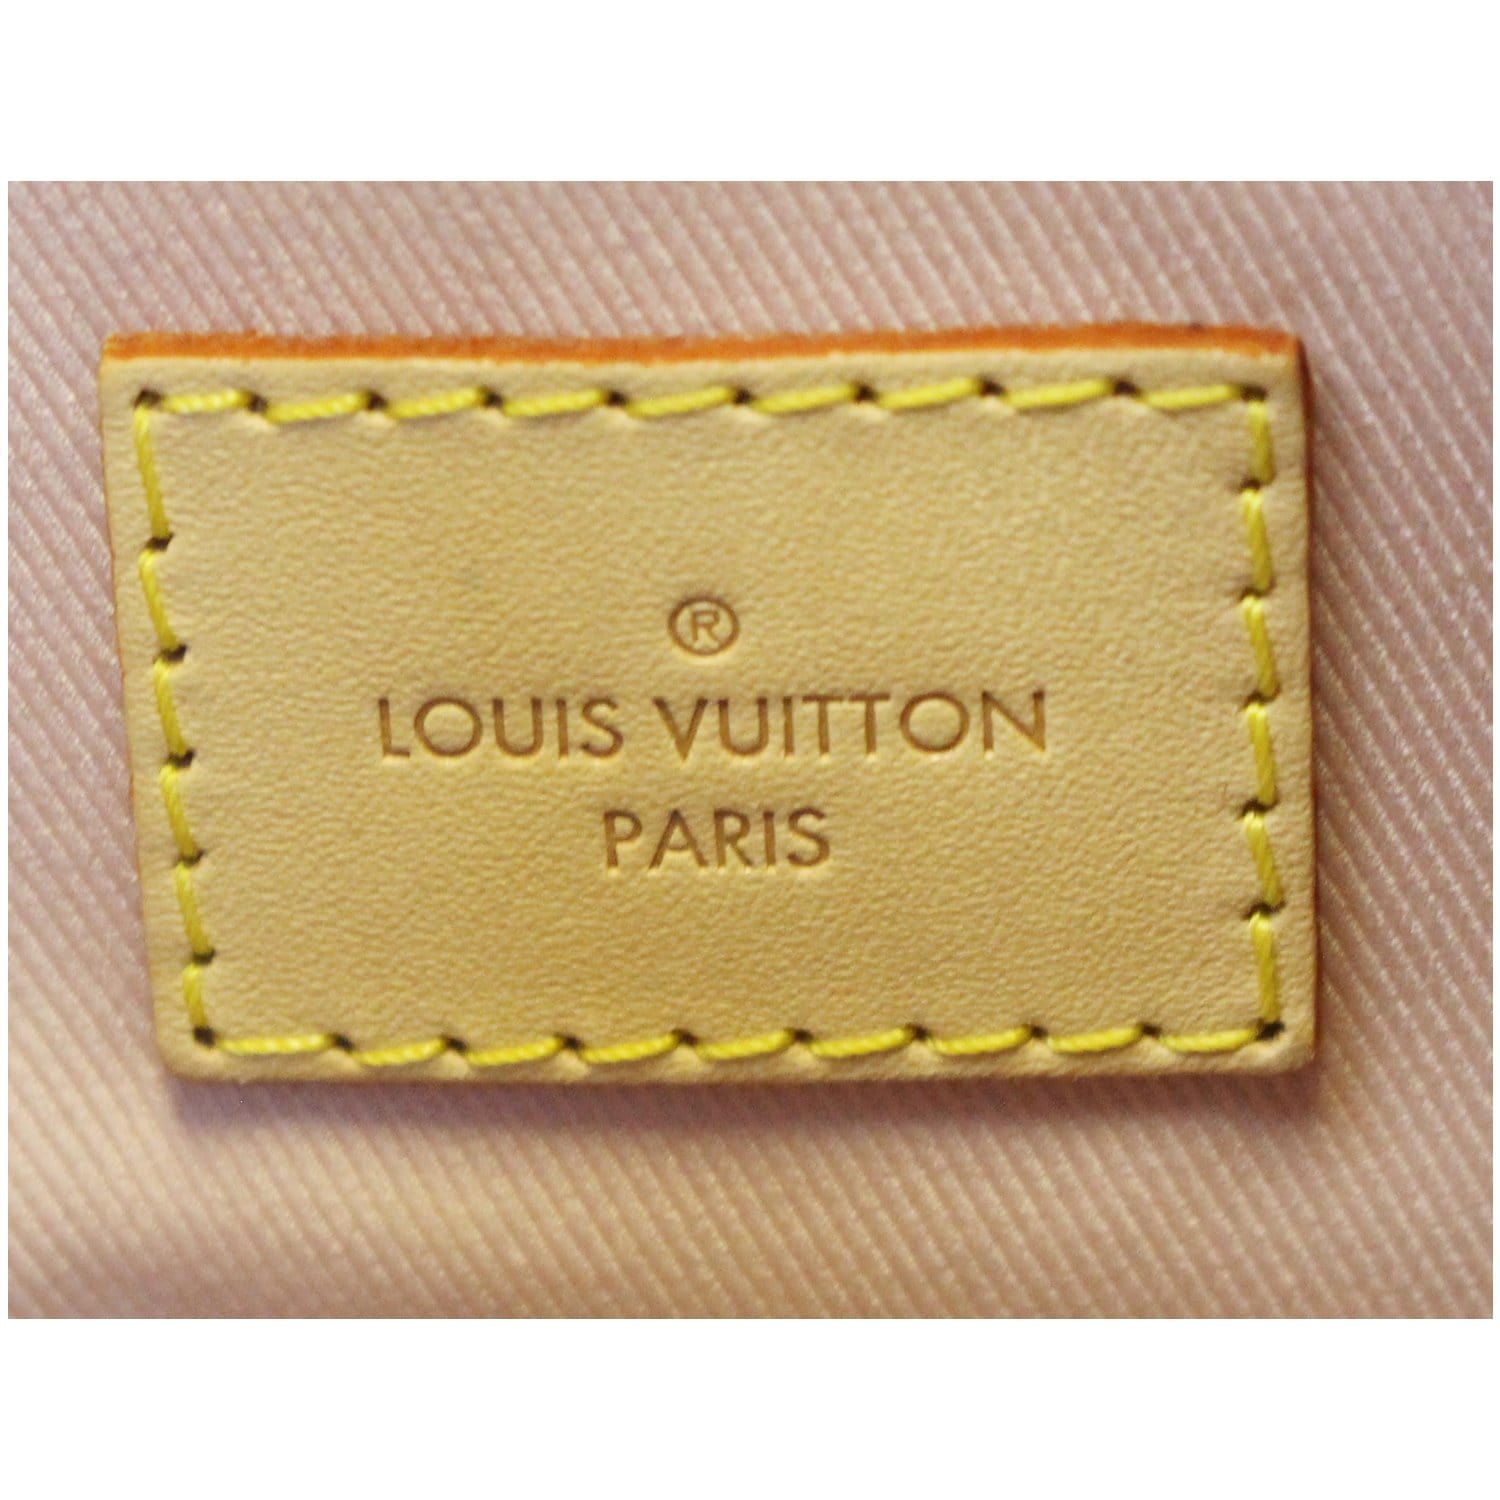 Louis Vuitton Graceful Gm Damier Azur – thankunext.us